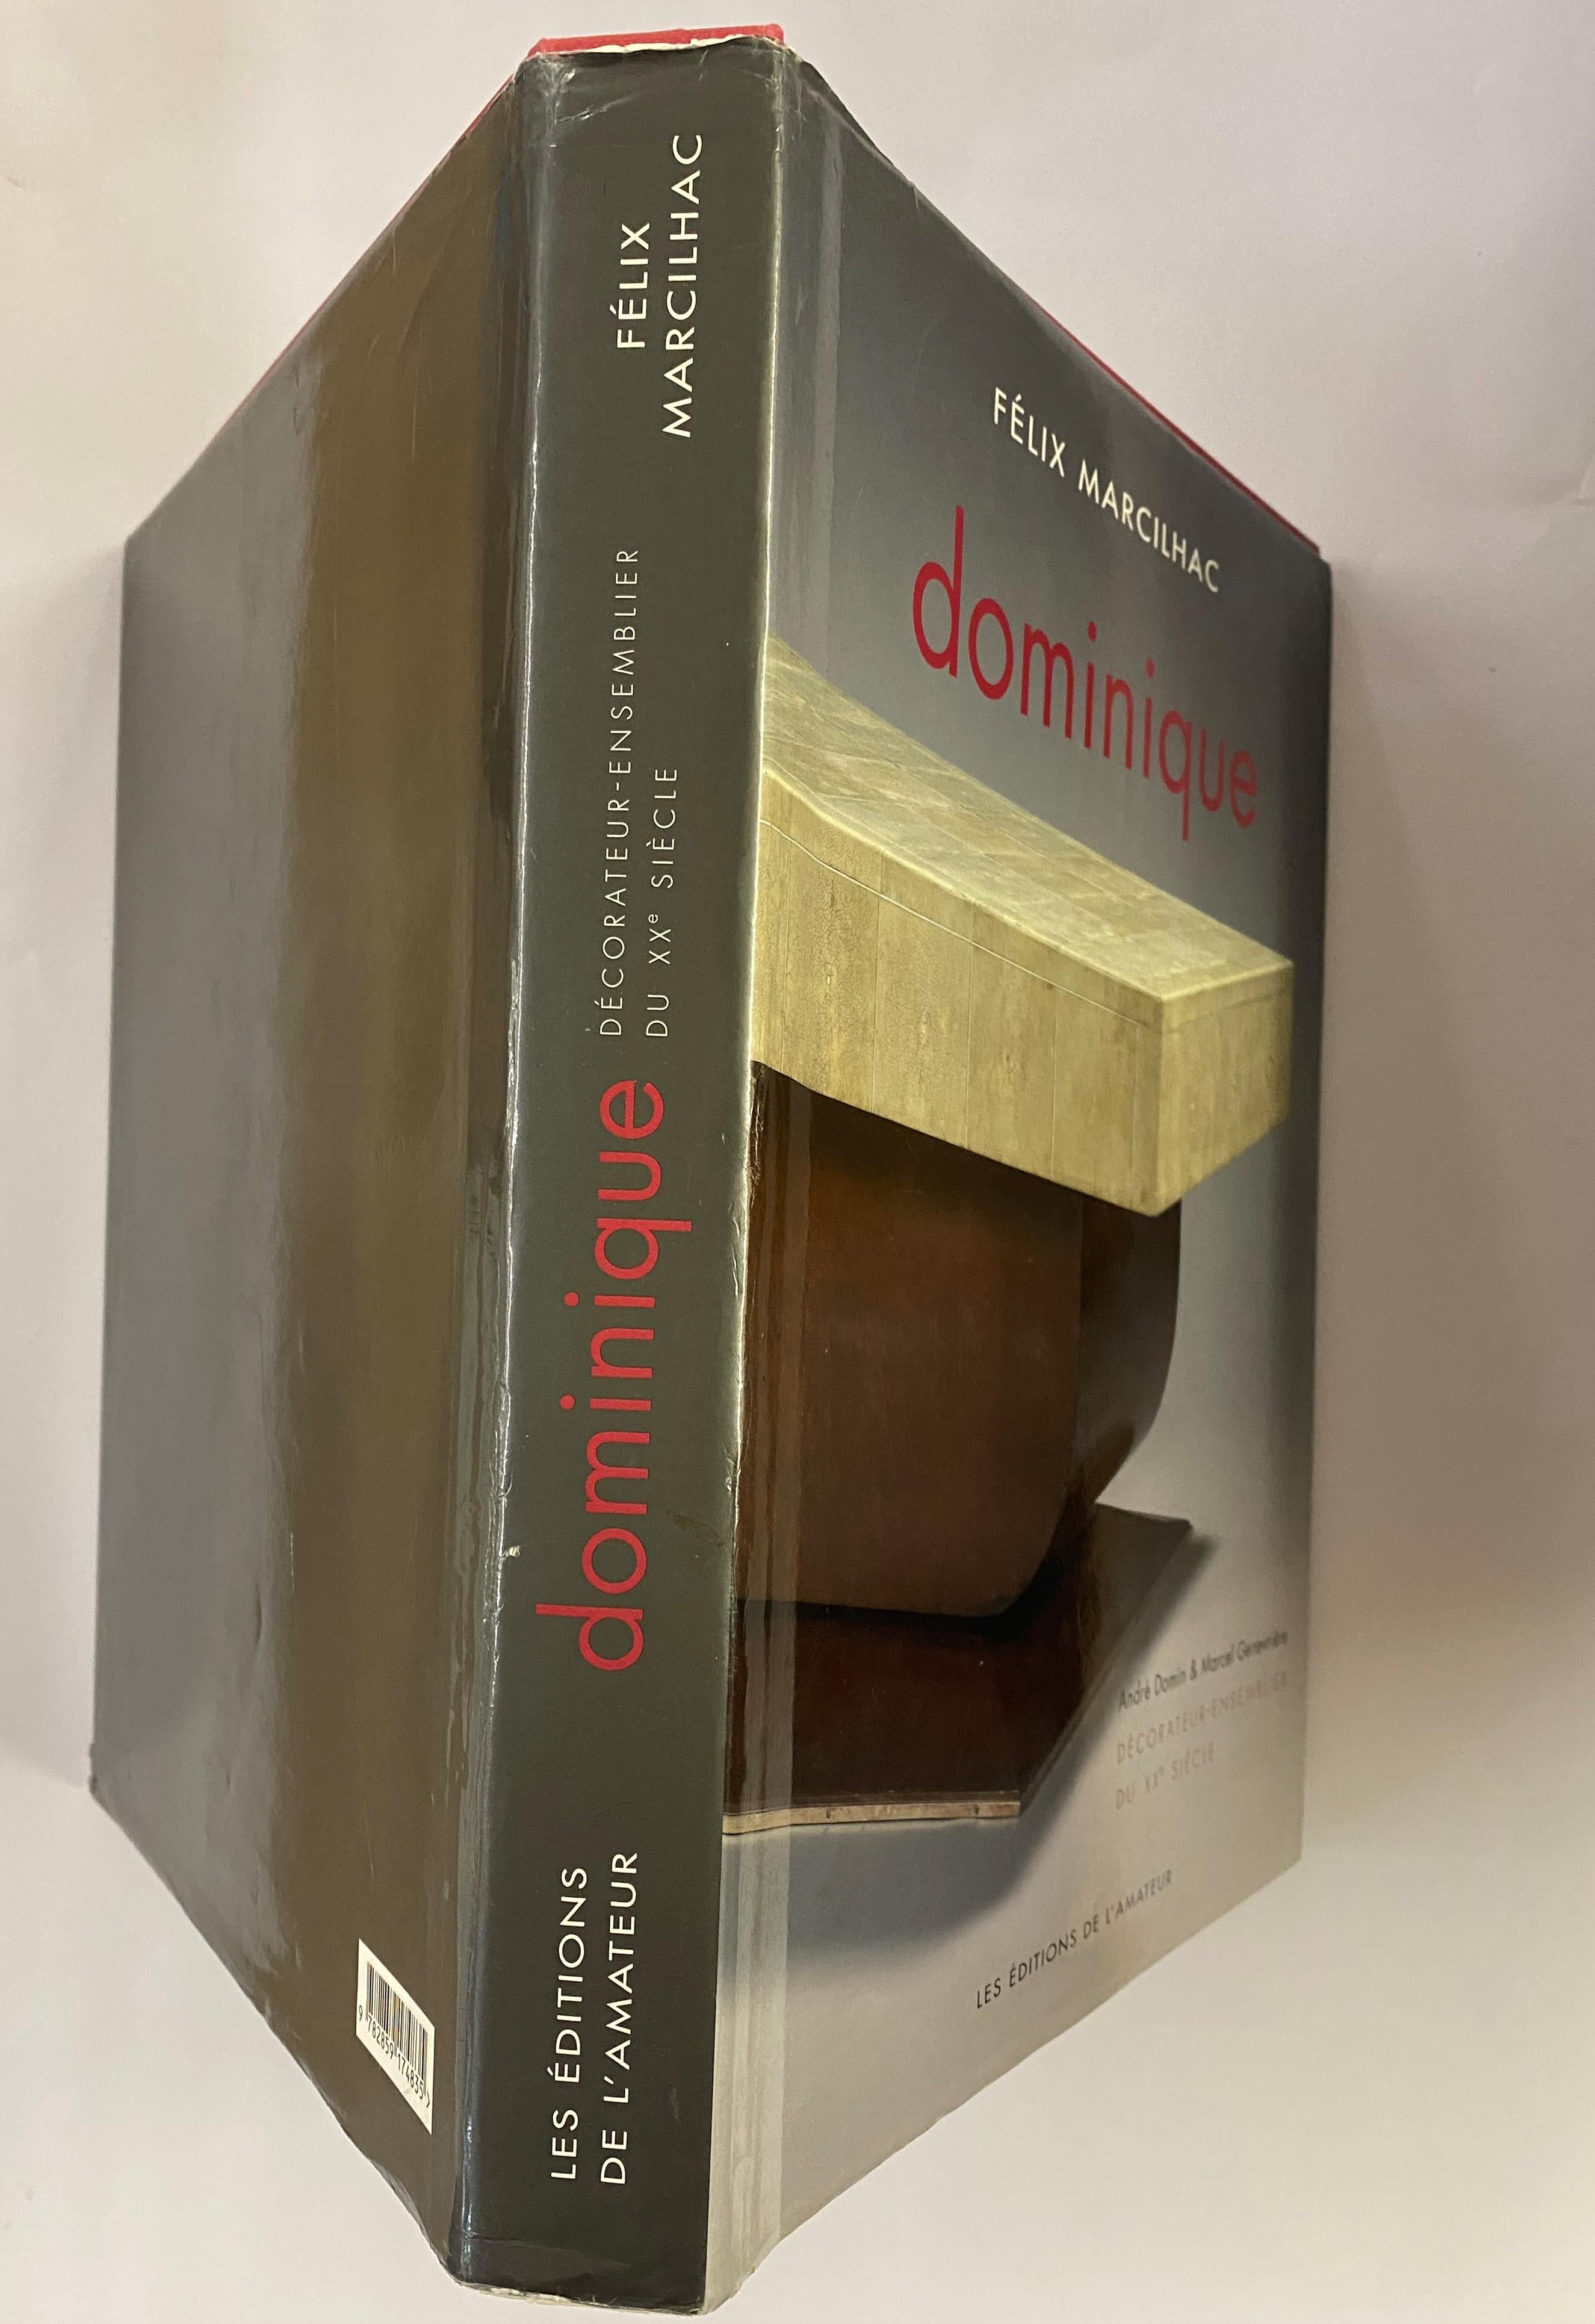 Dominique: Decorateur-Ensemblier Du XX Siecle by Felix Marcilhac (Book) For Sale 9